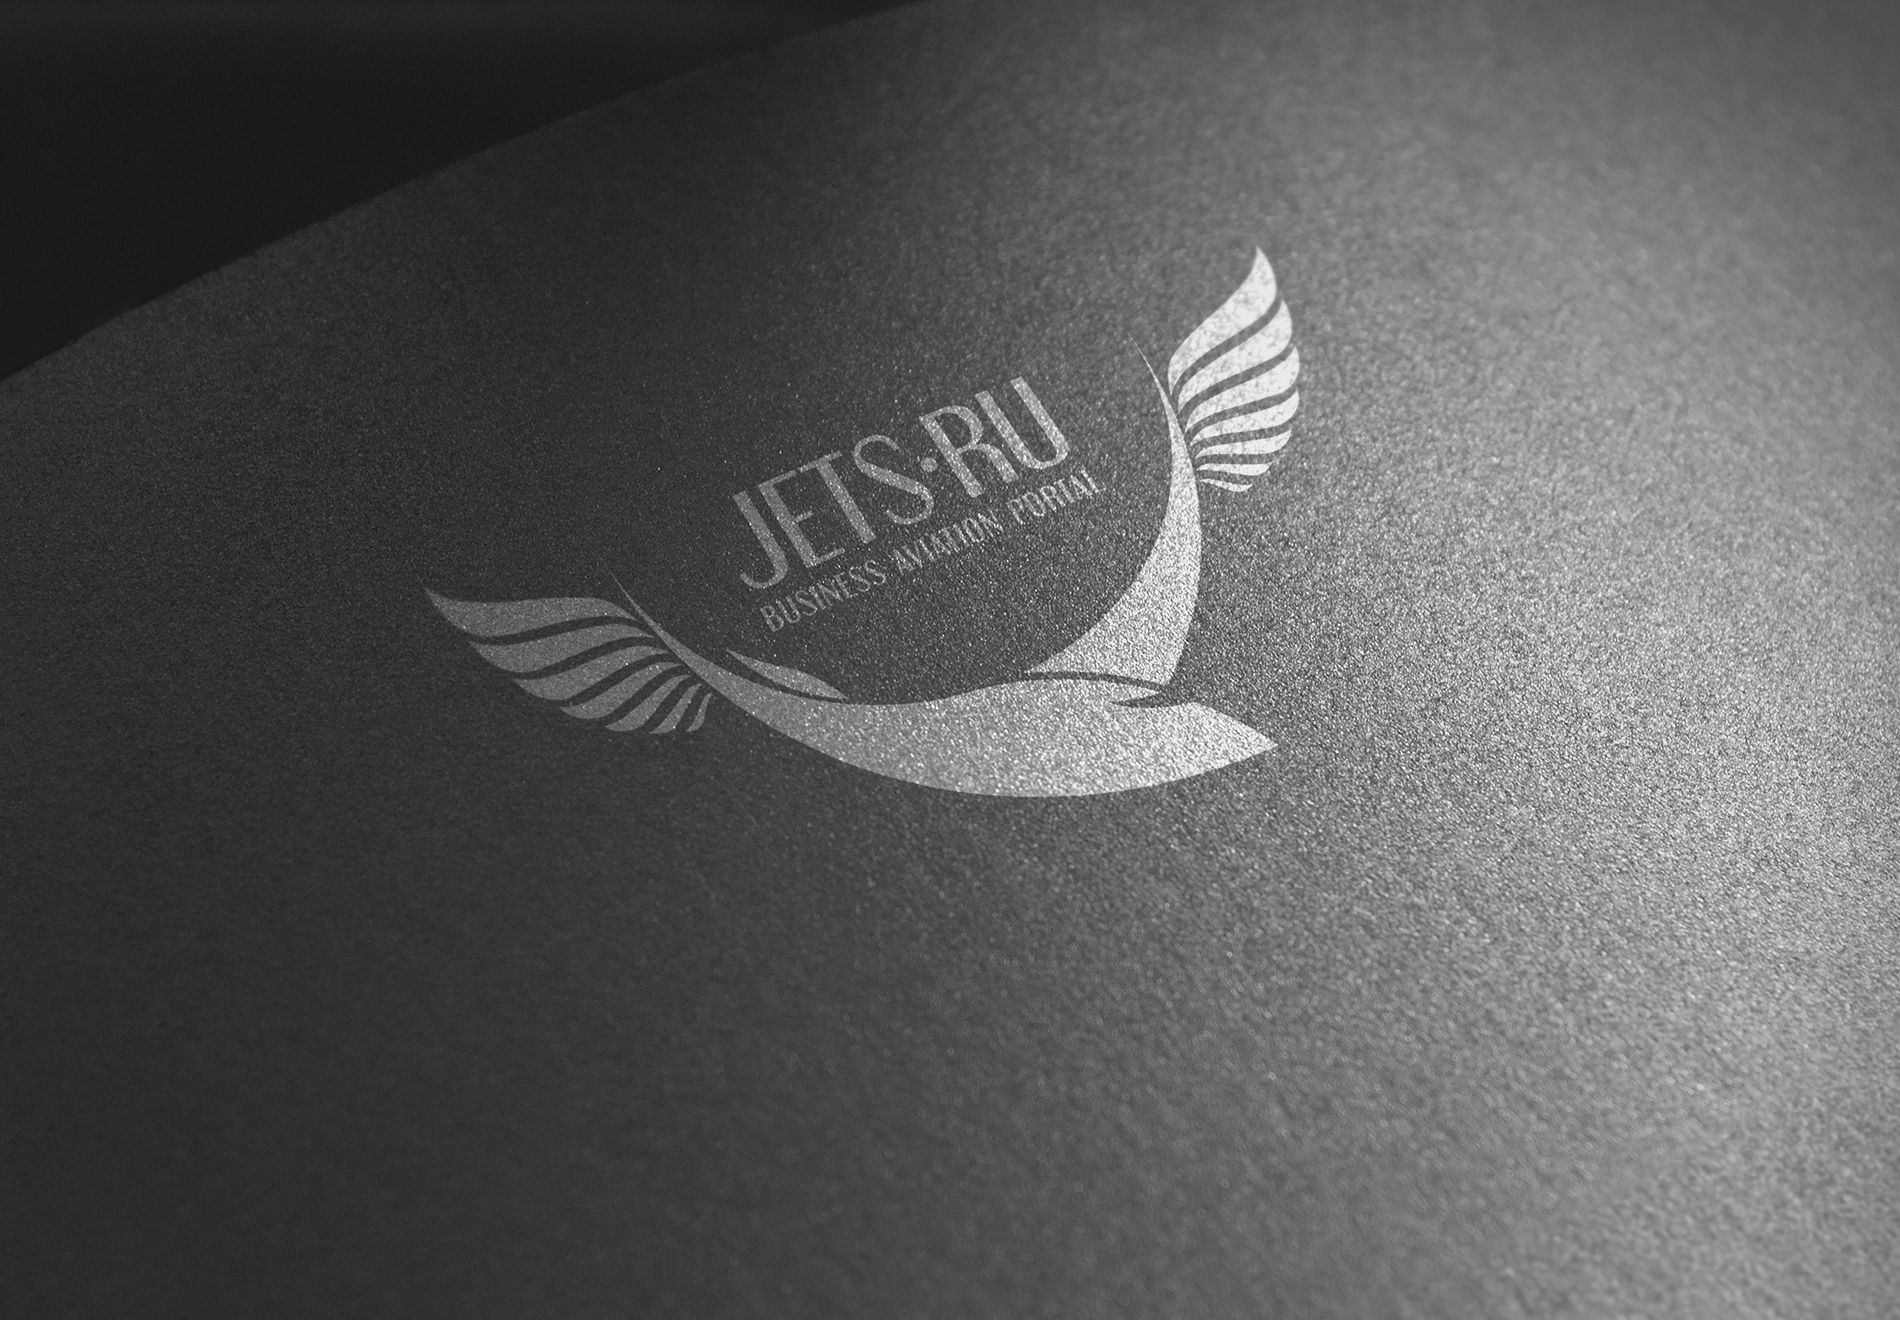 Логотип для jets.ru - дизайнер kopych